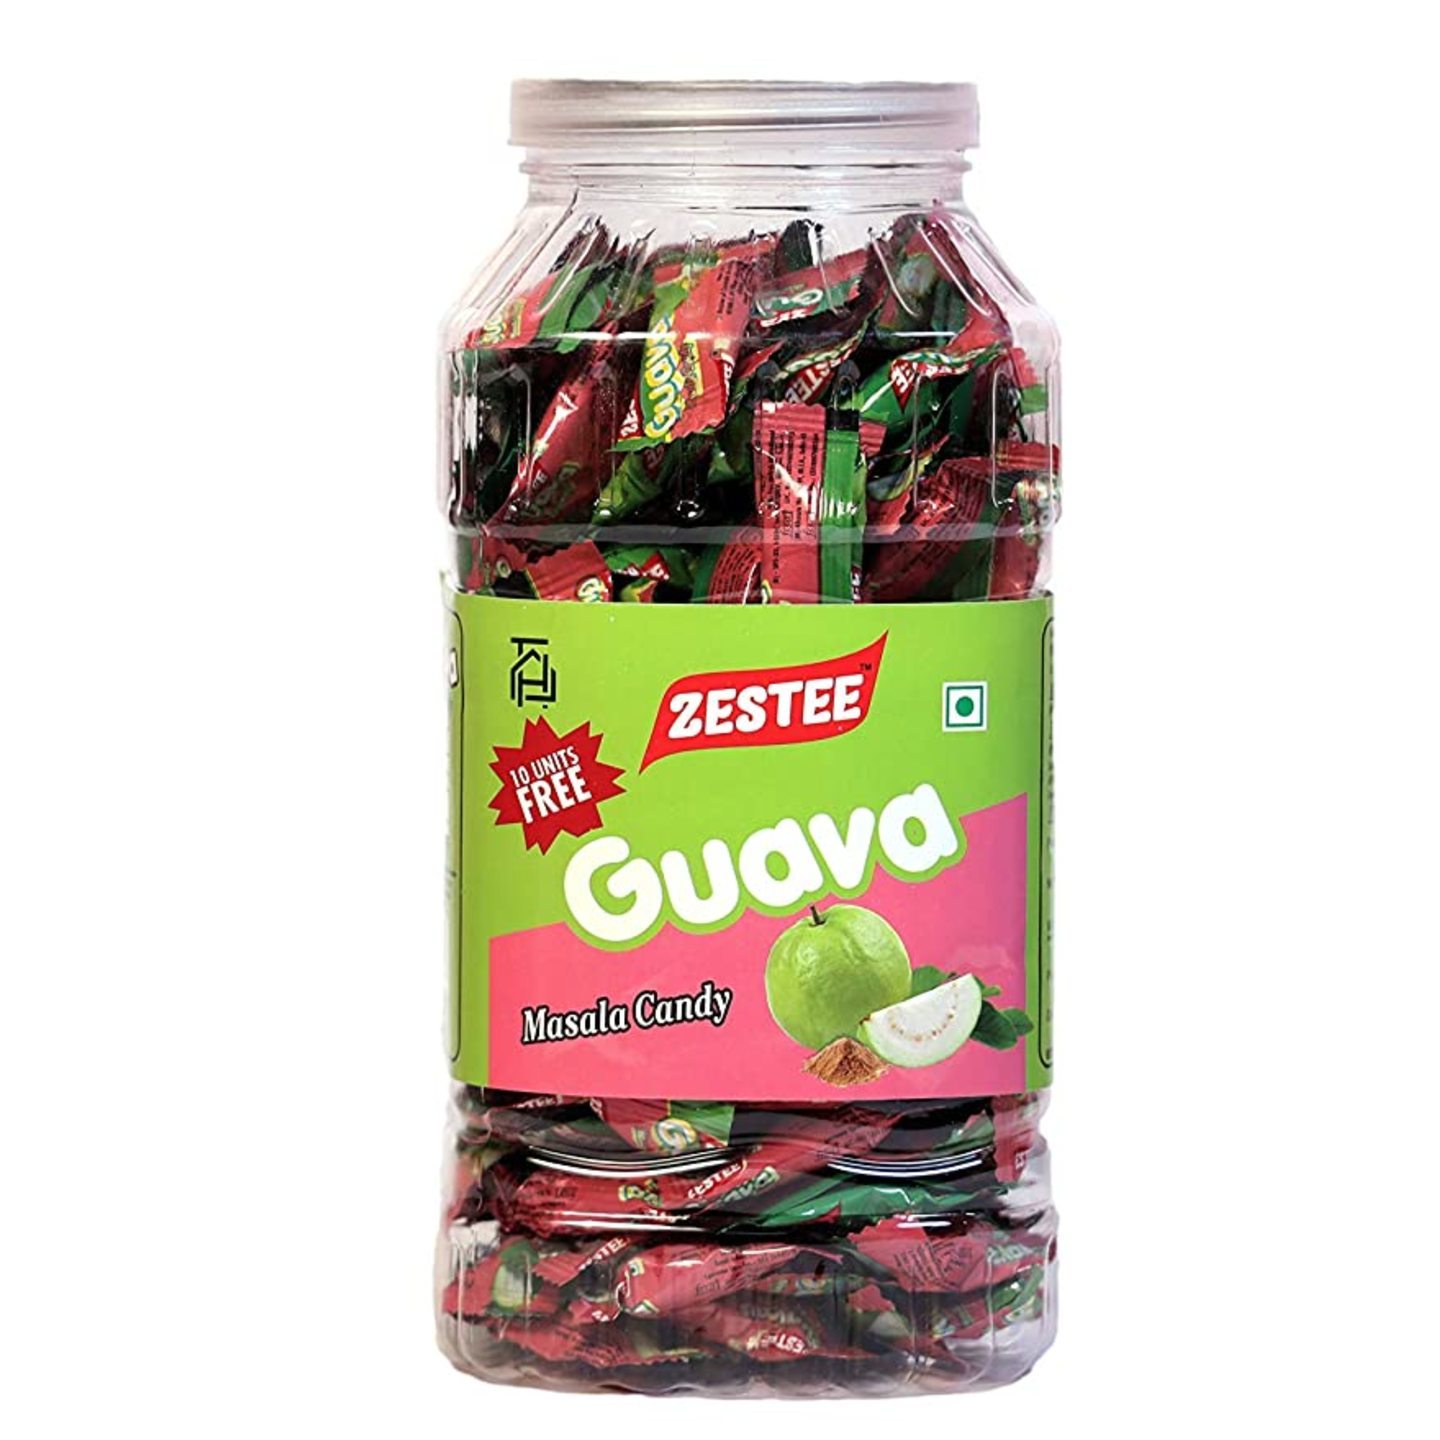 Zestee Guava Masala Candy Jar Mrp 200